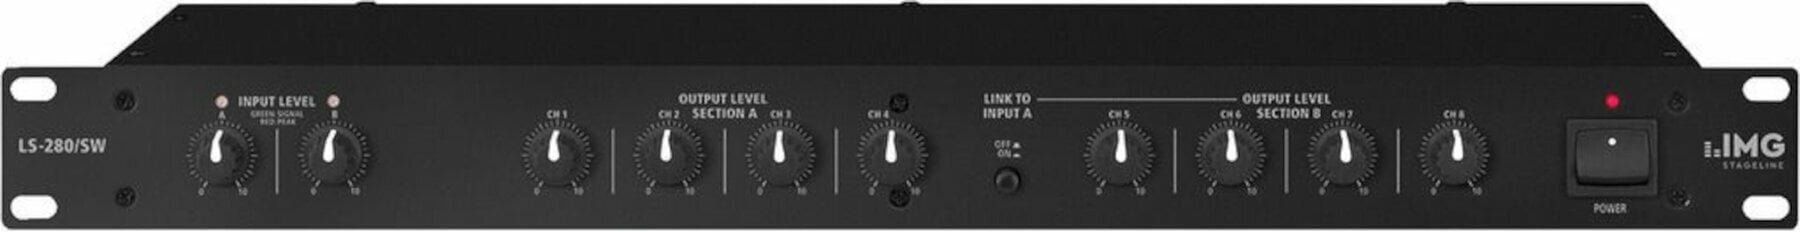 Photos - Amplifier MONACOR LS-280/SW LS-280-SW 